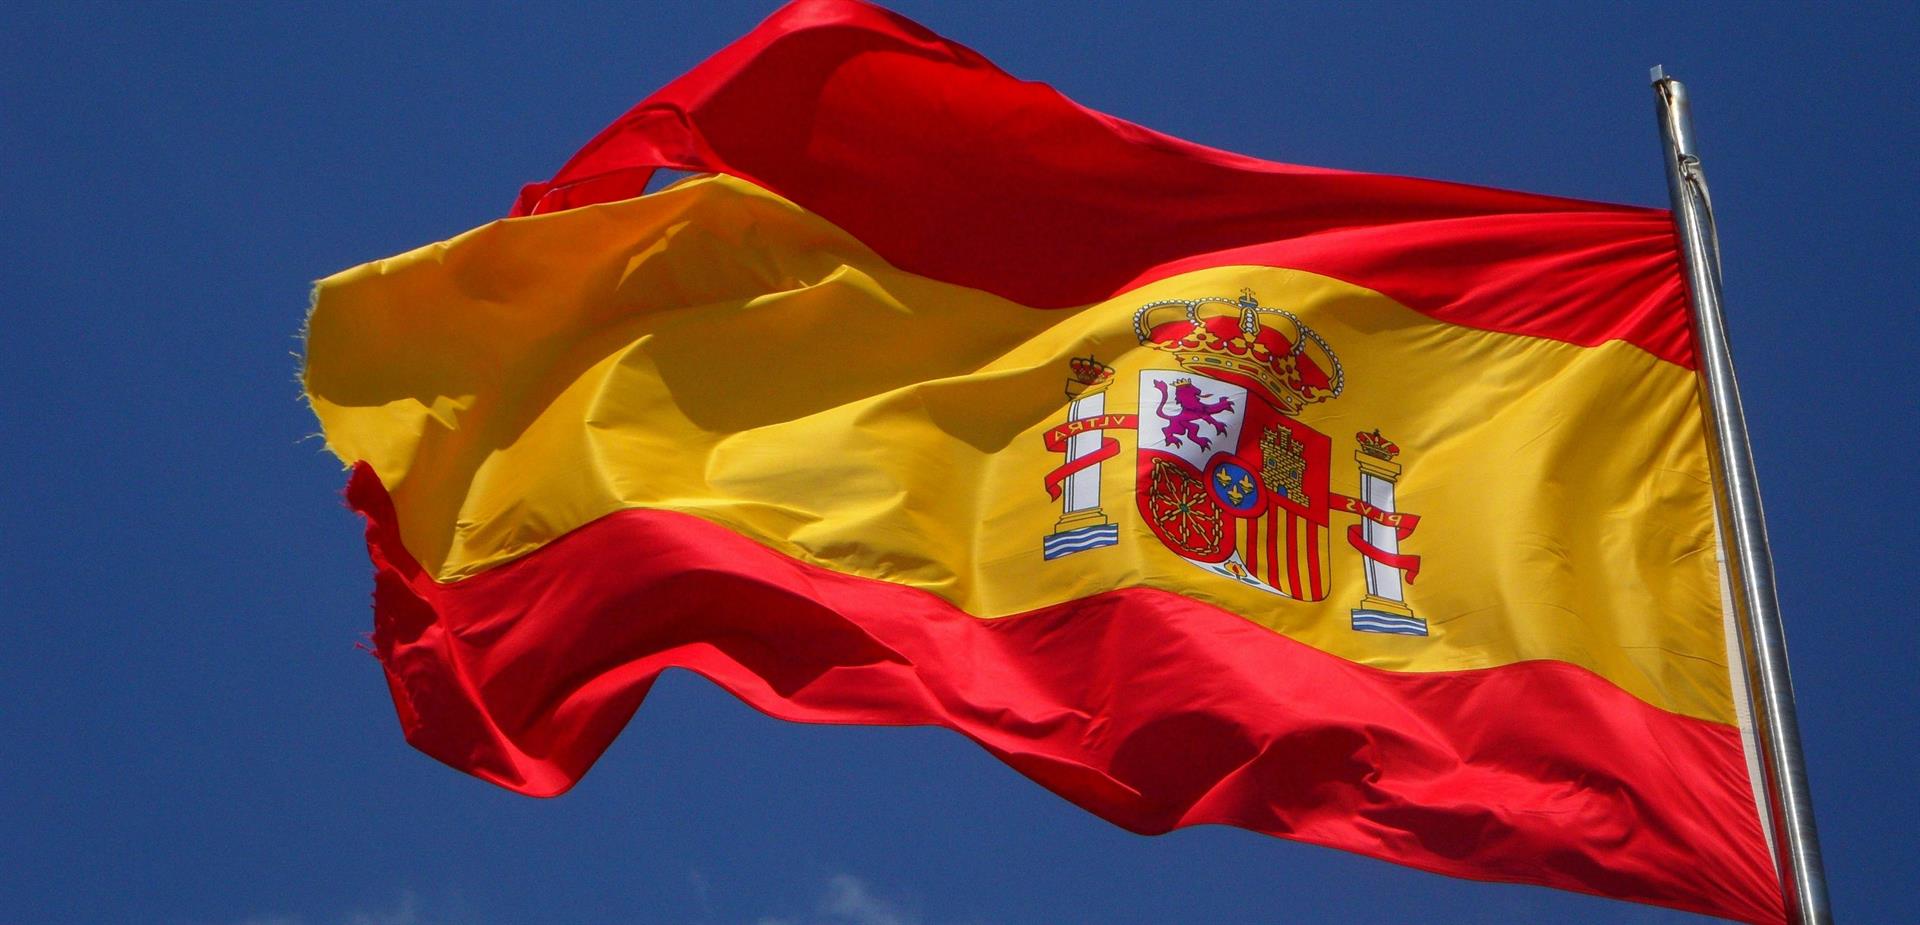 טיול מאורגן לדרום ספרד ומשחק כדורגל במדריד | 8 ימים